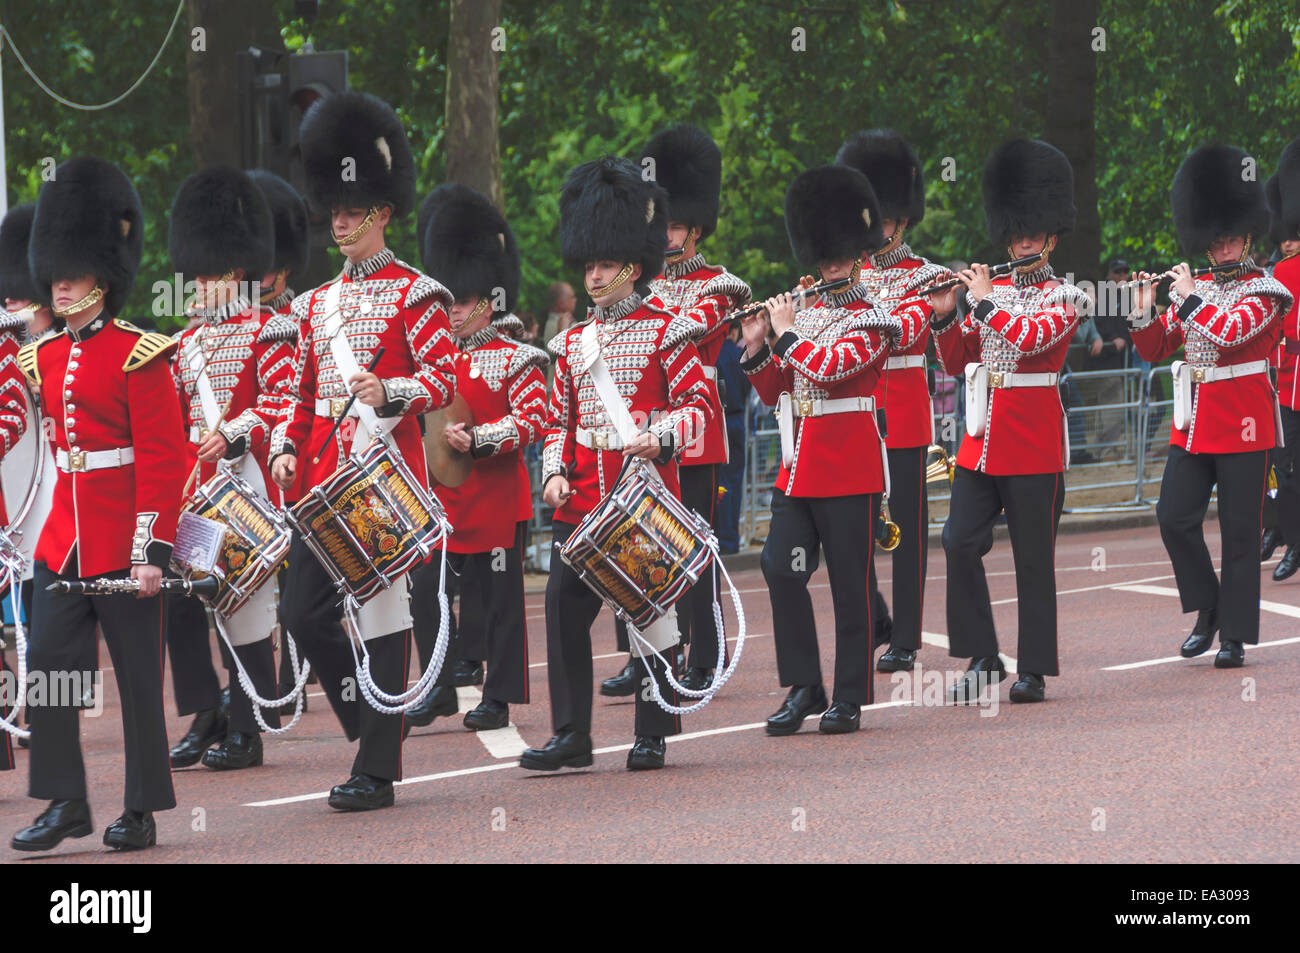 Guards Band, batterie et les tuyaux, marchant à la parade de la couleur, le Mall, Londres, Angleterre, Royaume-Uni, Europe Banque D'Images